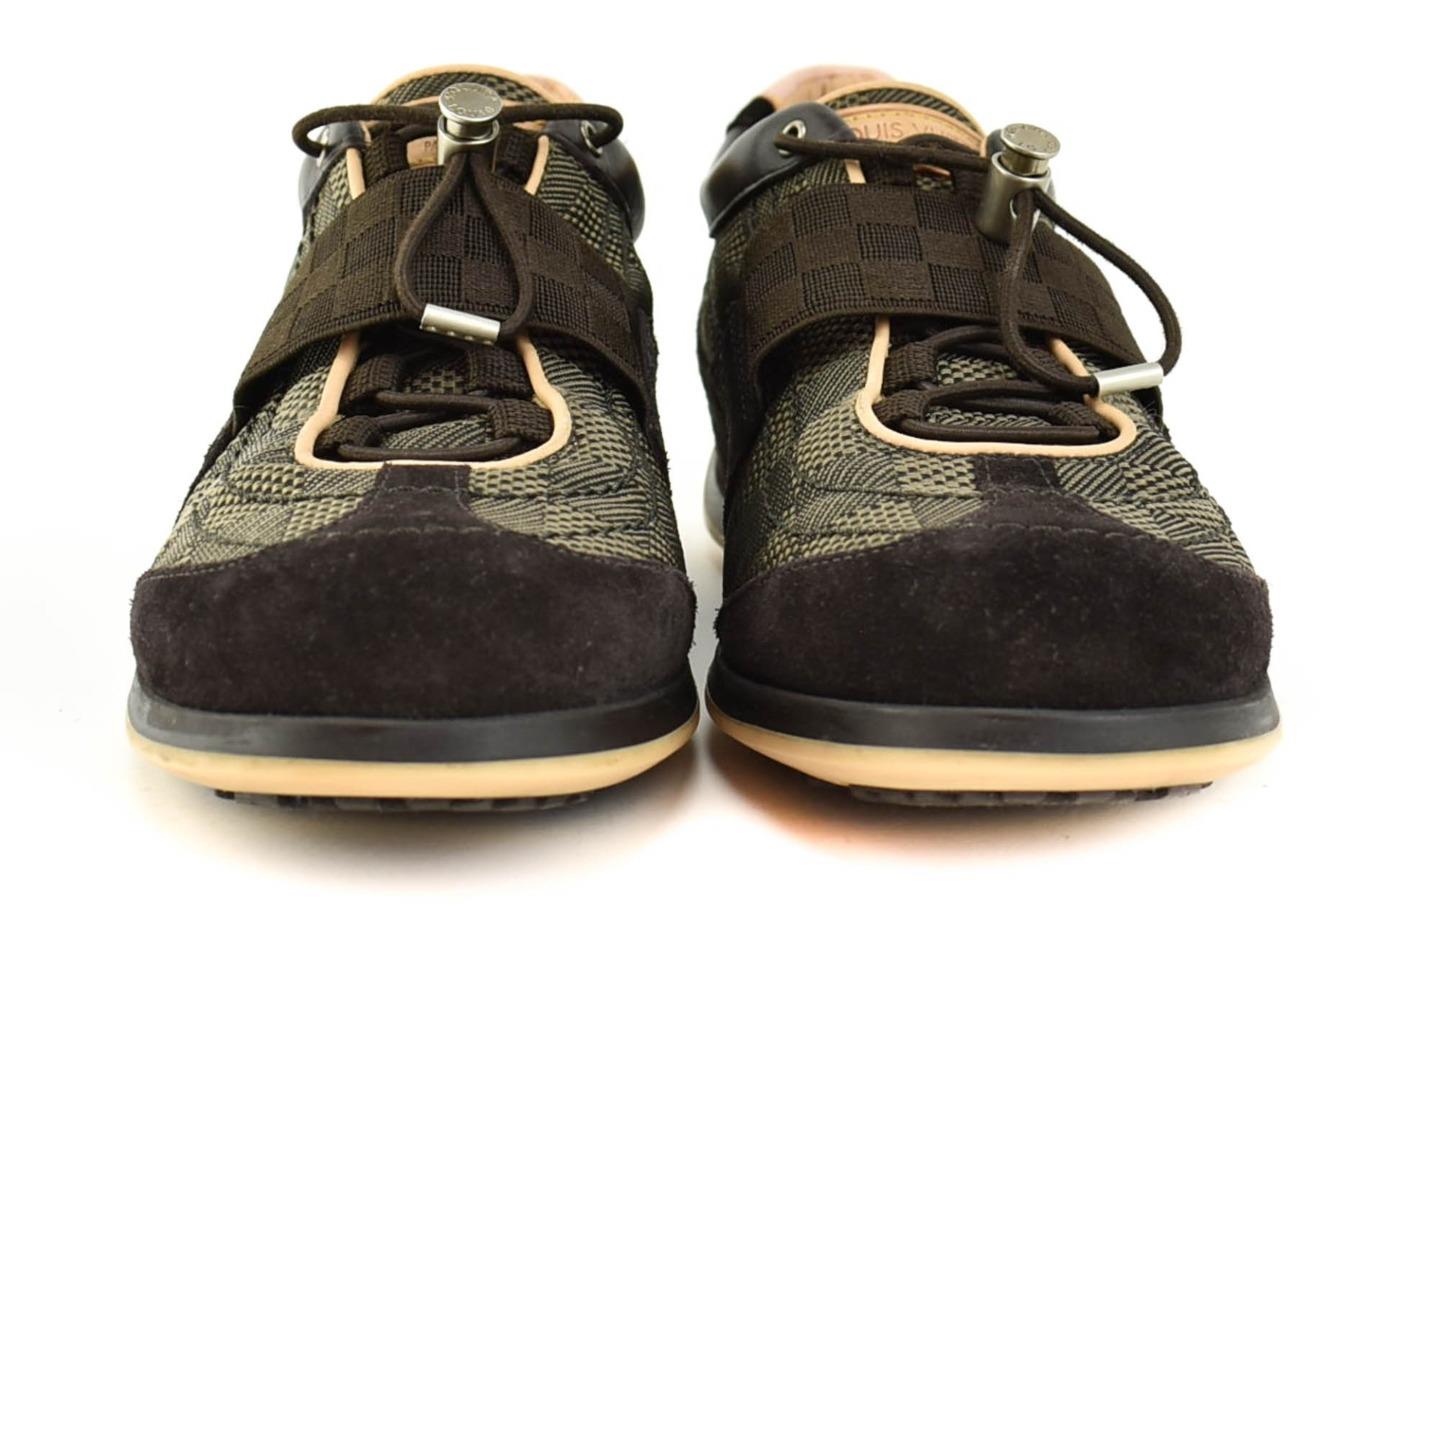 LOUIS VUITTON: Brown, Leather & &quot;Damier&quot; Logo, Sneakers/Athletic Shoes Sz: 8M | eBay